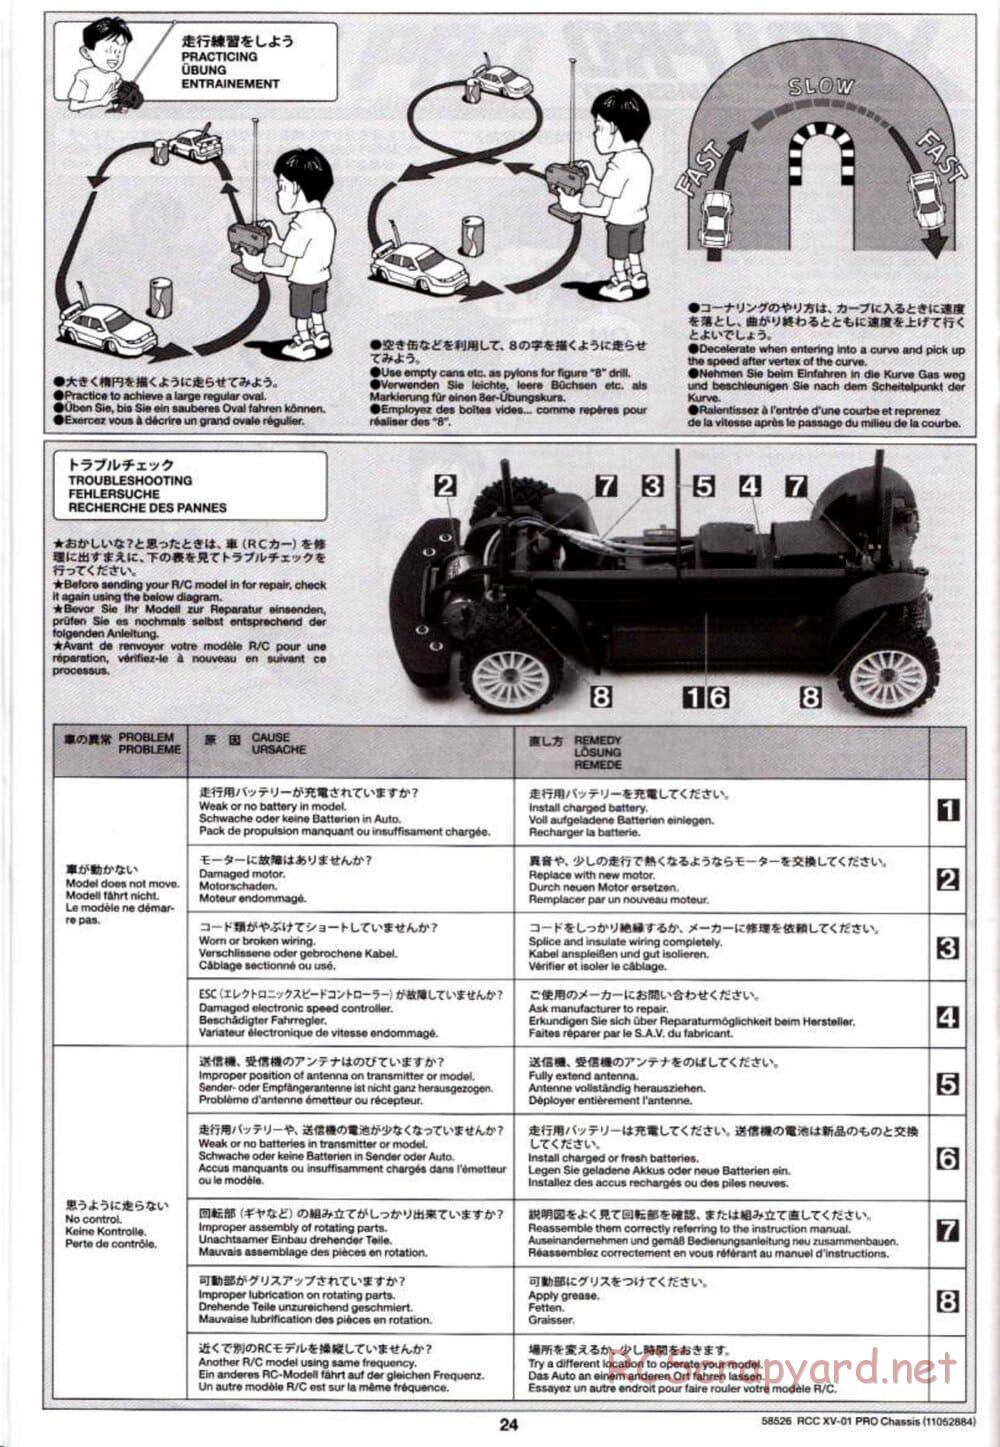 Tamiya - XV-01 PRO Chassis - Manual - Page 24